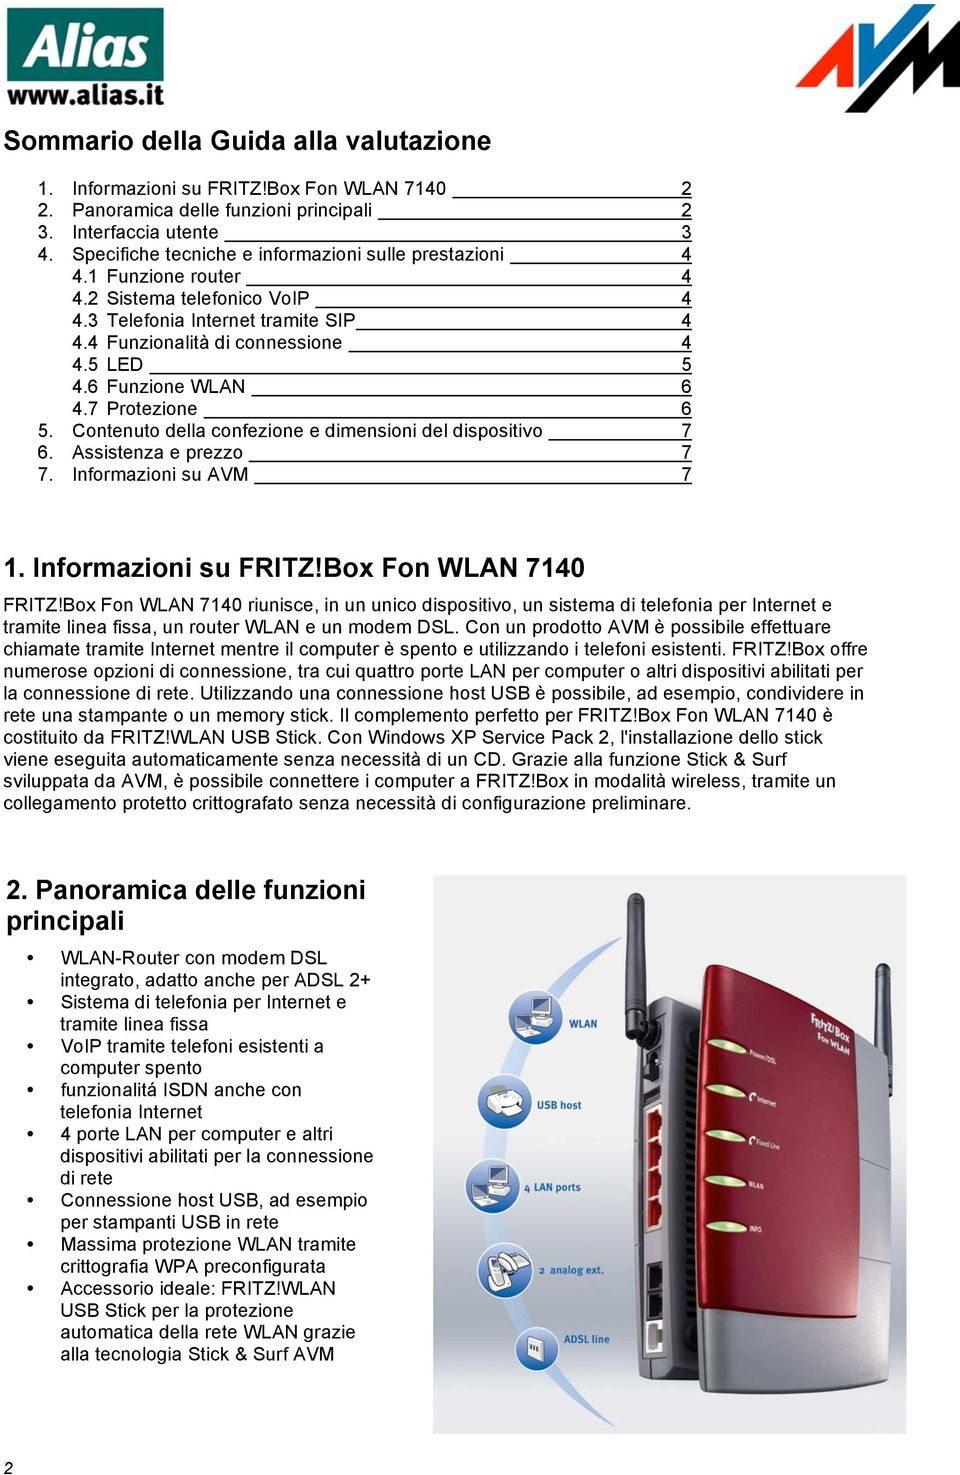 6 Funzione WLAN 6 4.7 Protezione 6 5. Contenuto della confezione e dimensioni del dispositivo 7 6. Assistenza e prezzo 7 7. Informazioni su AVM 7 1. Informazioni su FRITZ!Box Fon WLAN 7140 FRITZ!